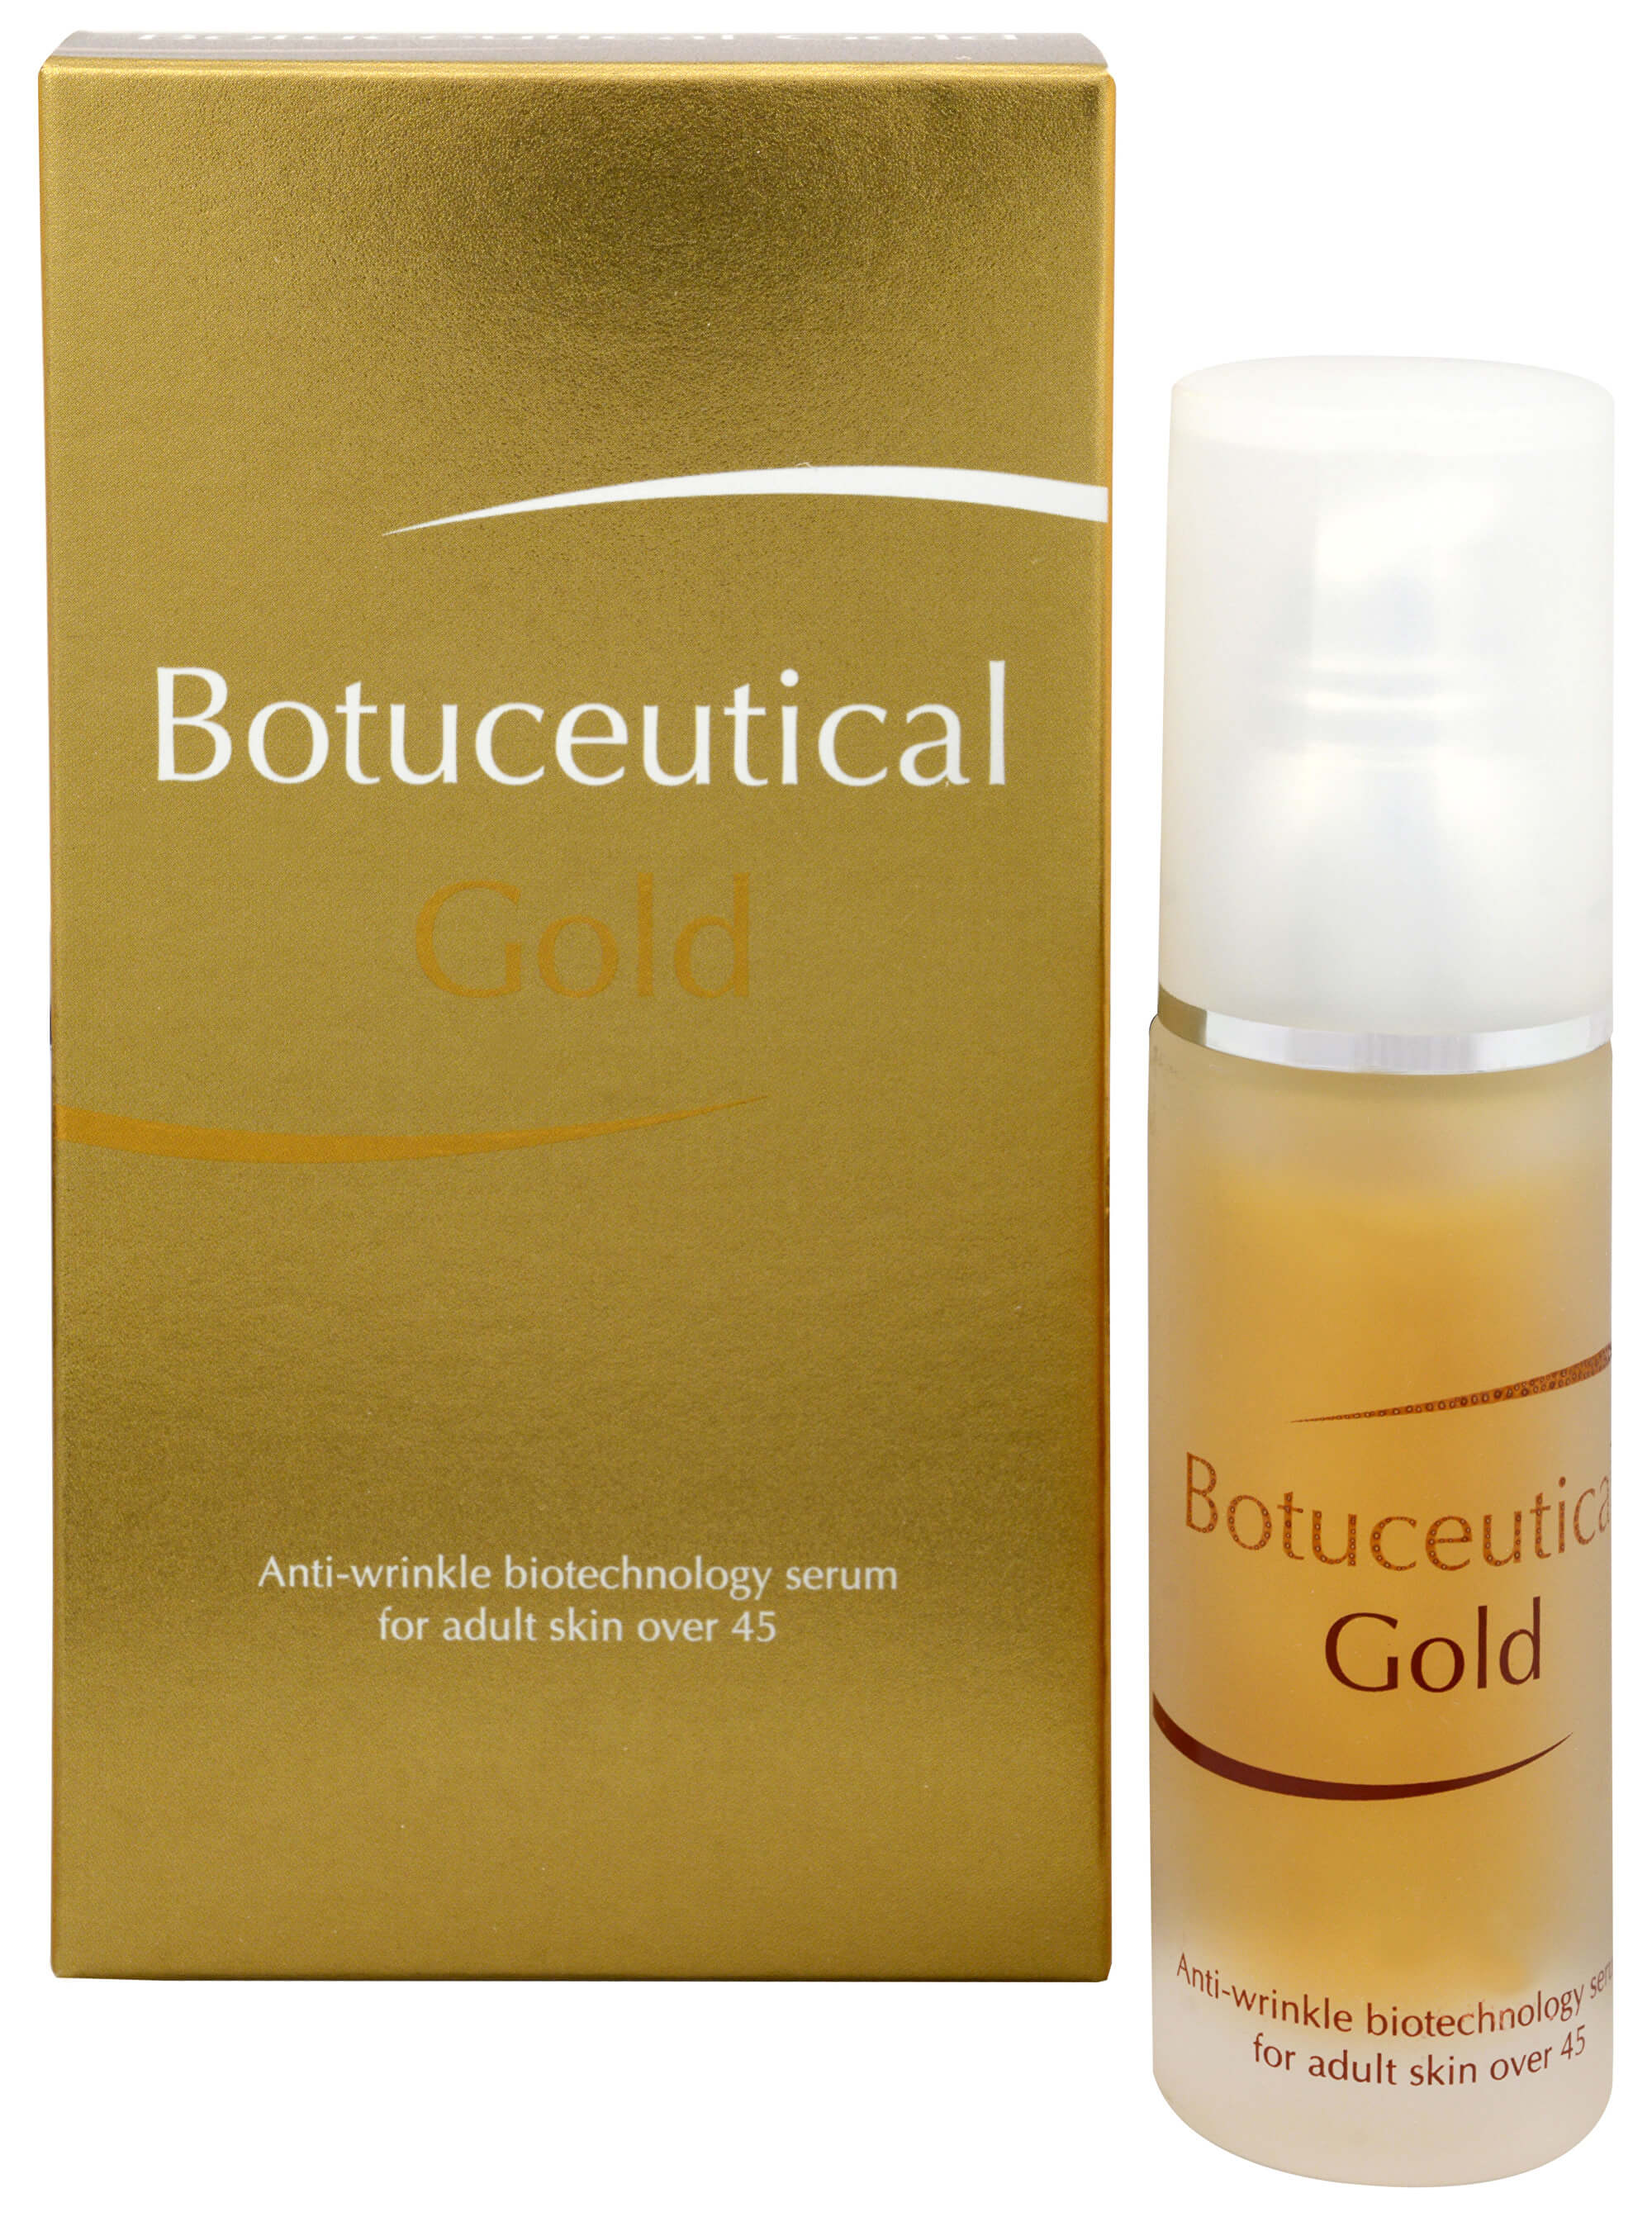 Zobrazit detail výrobku Fytofontana Botuceutical Gold - biotechnologické sérum proti vráskám na zralou pleť 45+ 30 ml